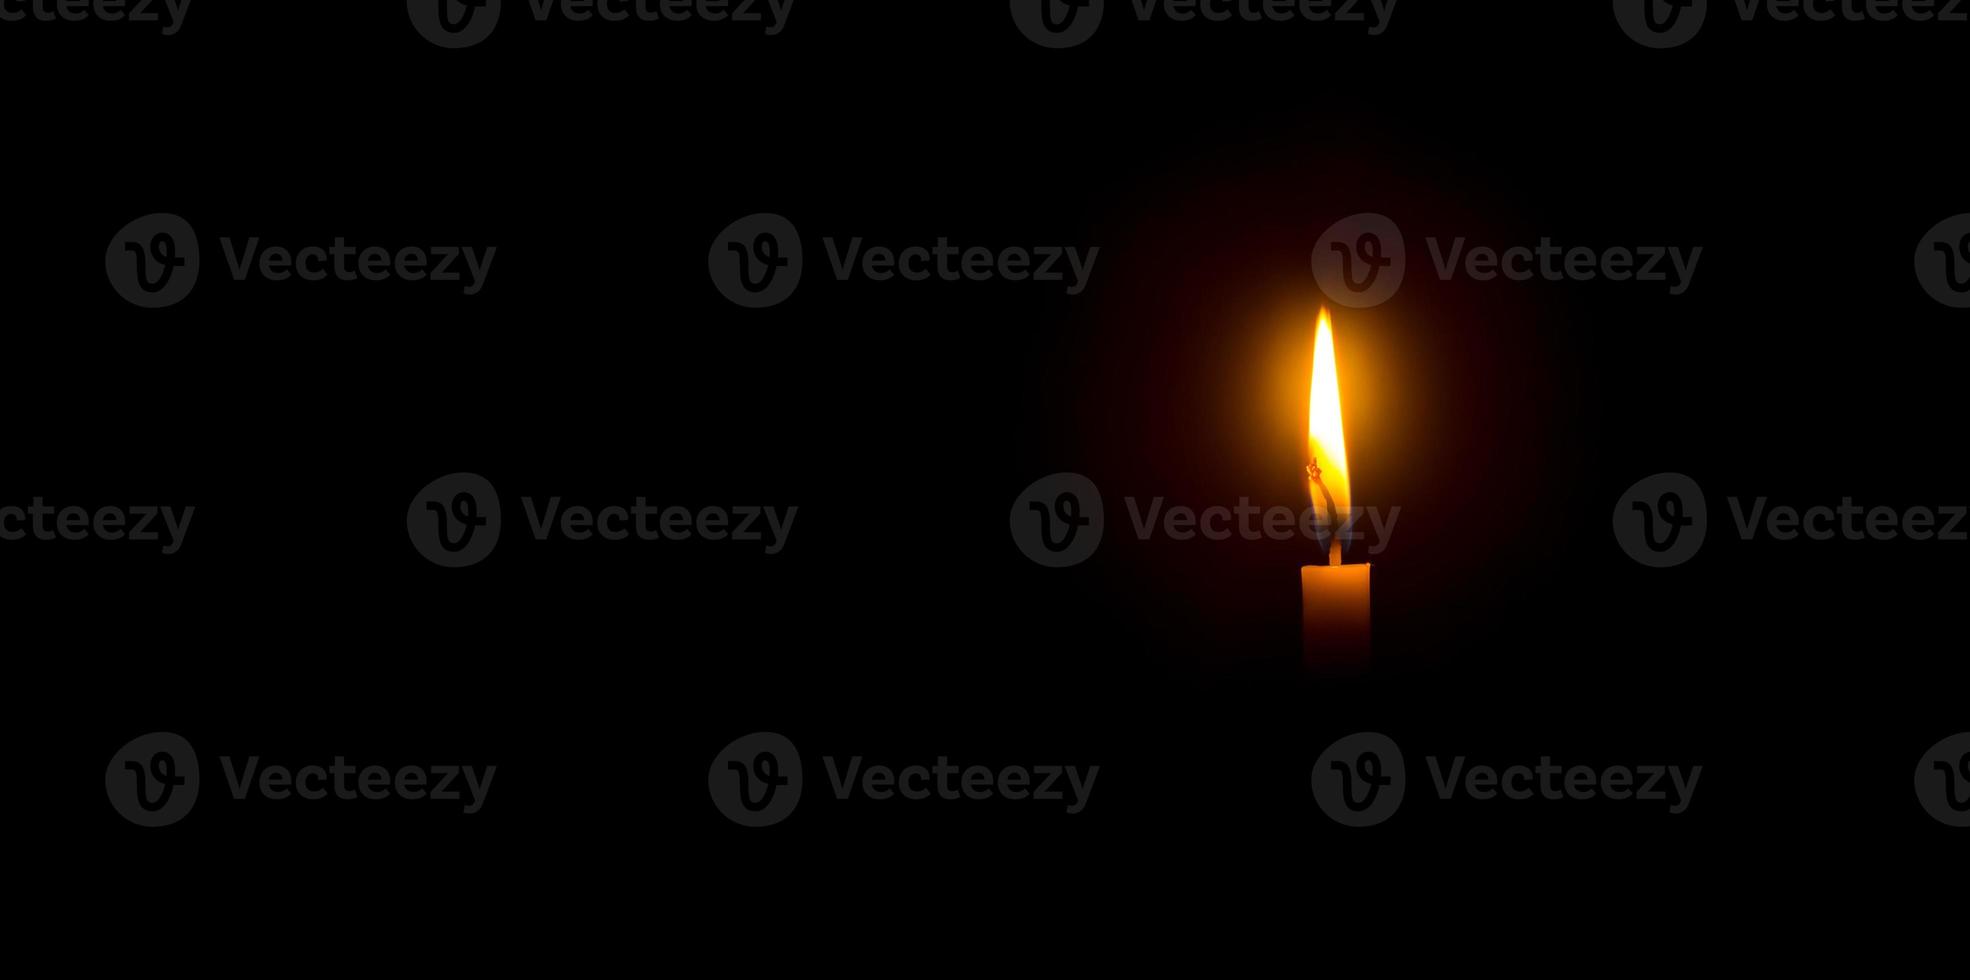 en enda brinnande ljus flamma eller ljus lysande på ett orange ljus på svart eller mörk bakgrund på tabell i kyrka för jul, begravning eller minnesmärke service med kopia Plats foto